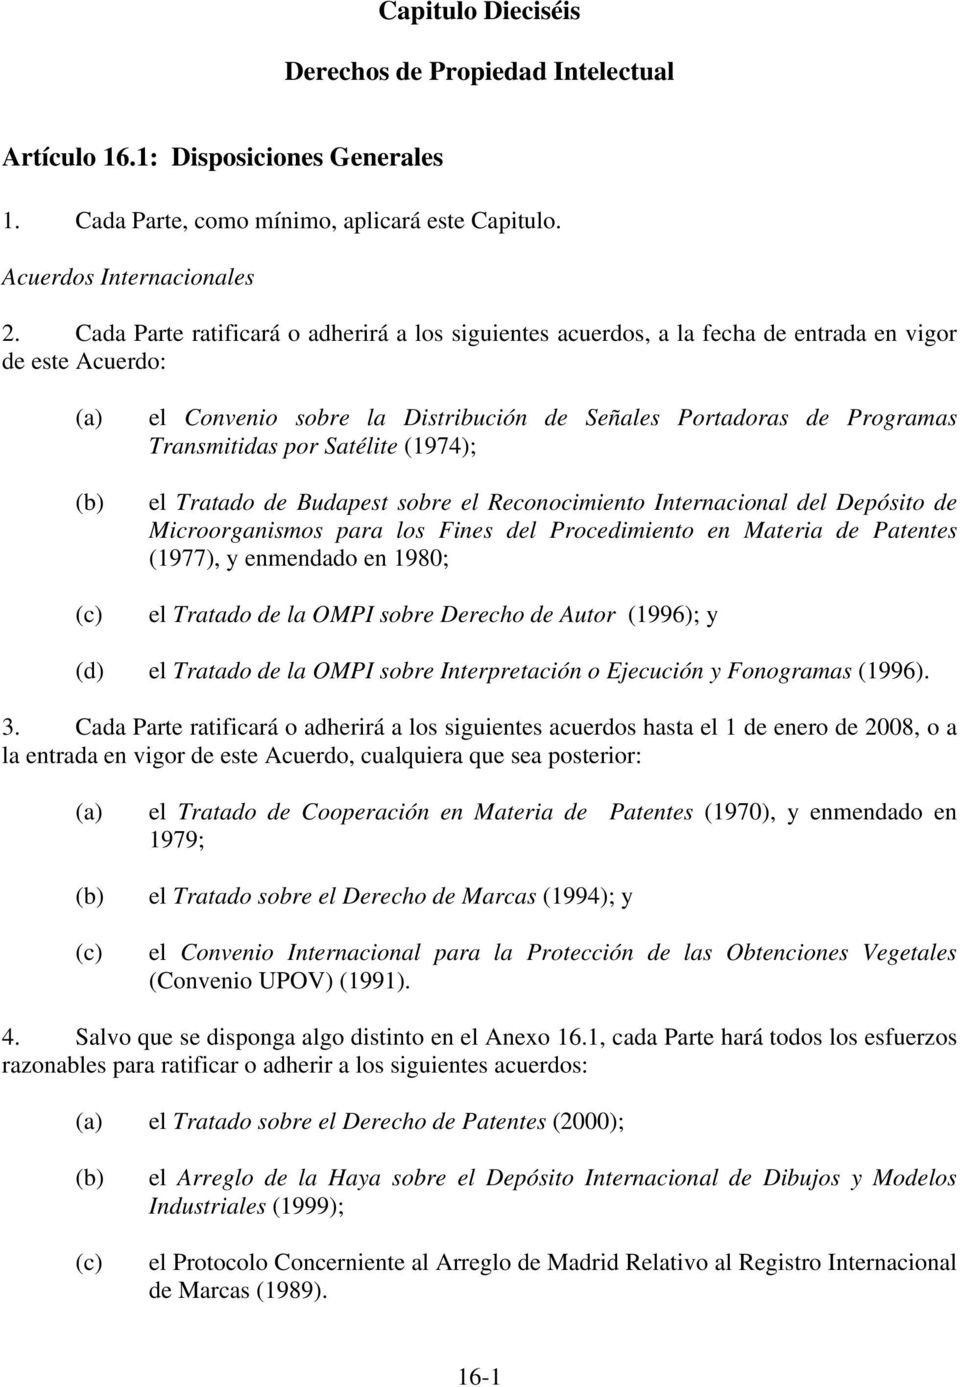 Satélite (1974); el Tratado de Budapest sobre el Reconocimiento Internacional del Depósito de Microorganismos para los Fines del Procedimiento en Materia de Patentes (1977), y enmendado en 1980; el